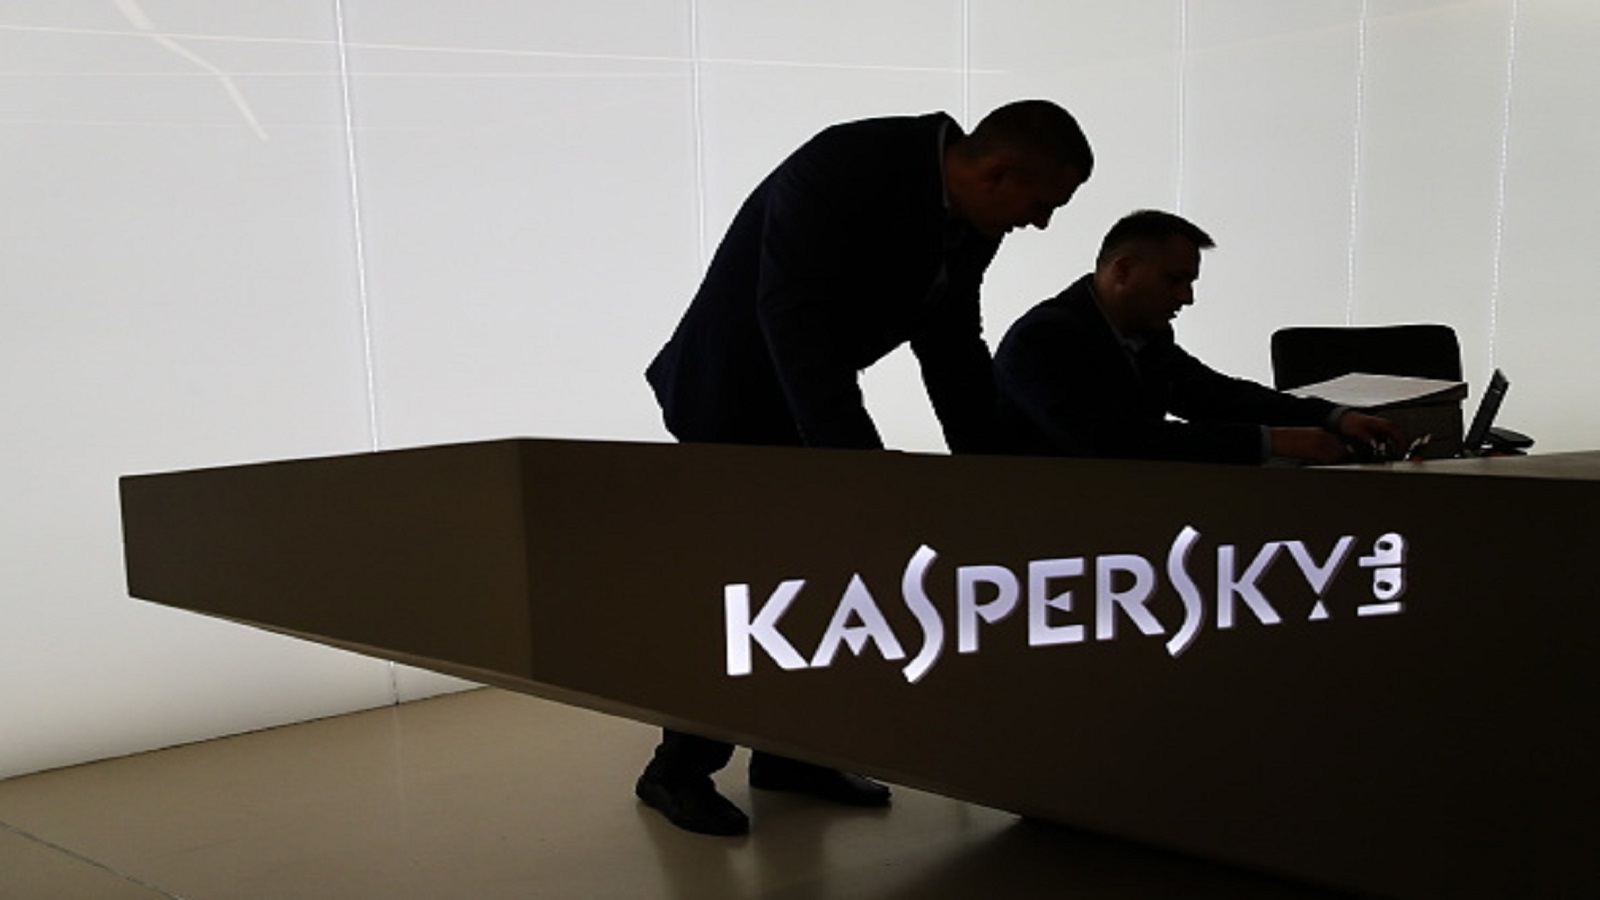 بعد اتهامها بالتجسس.. "كاسبرسكي" تُطلق "مبادرة الشفافية العالمية"